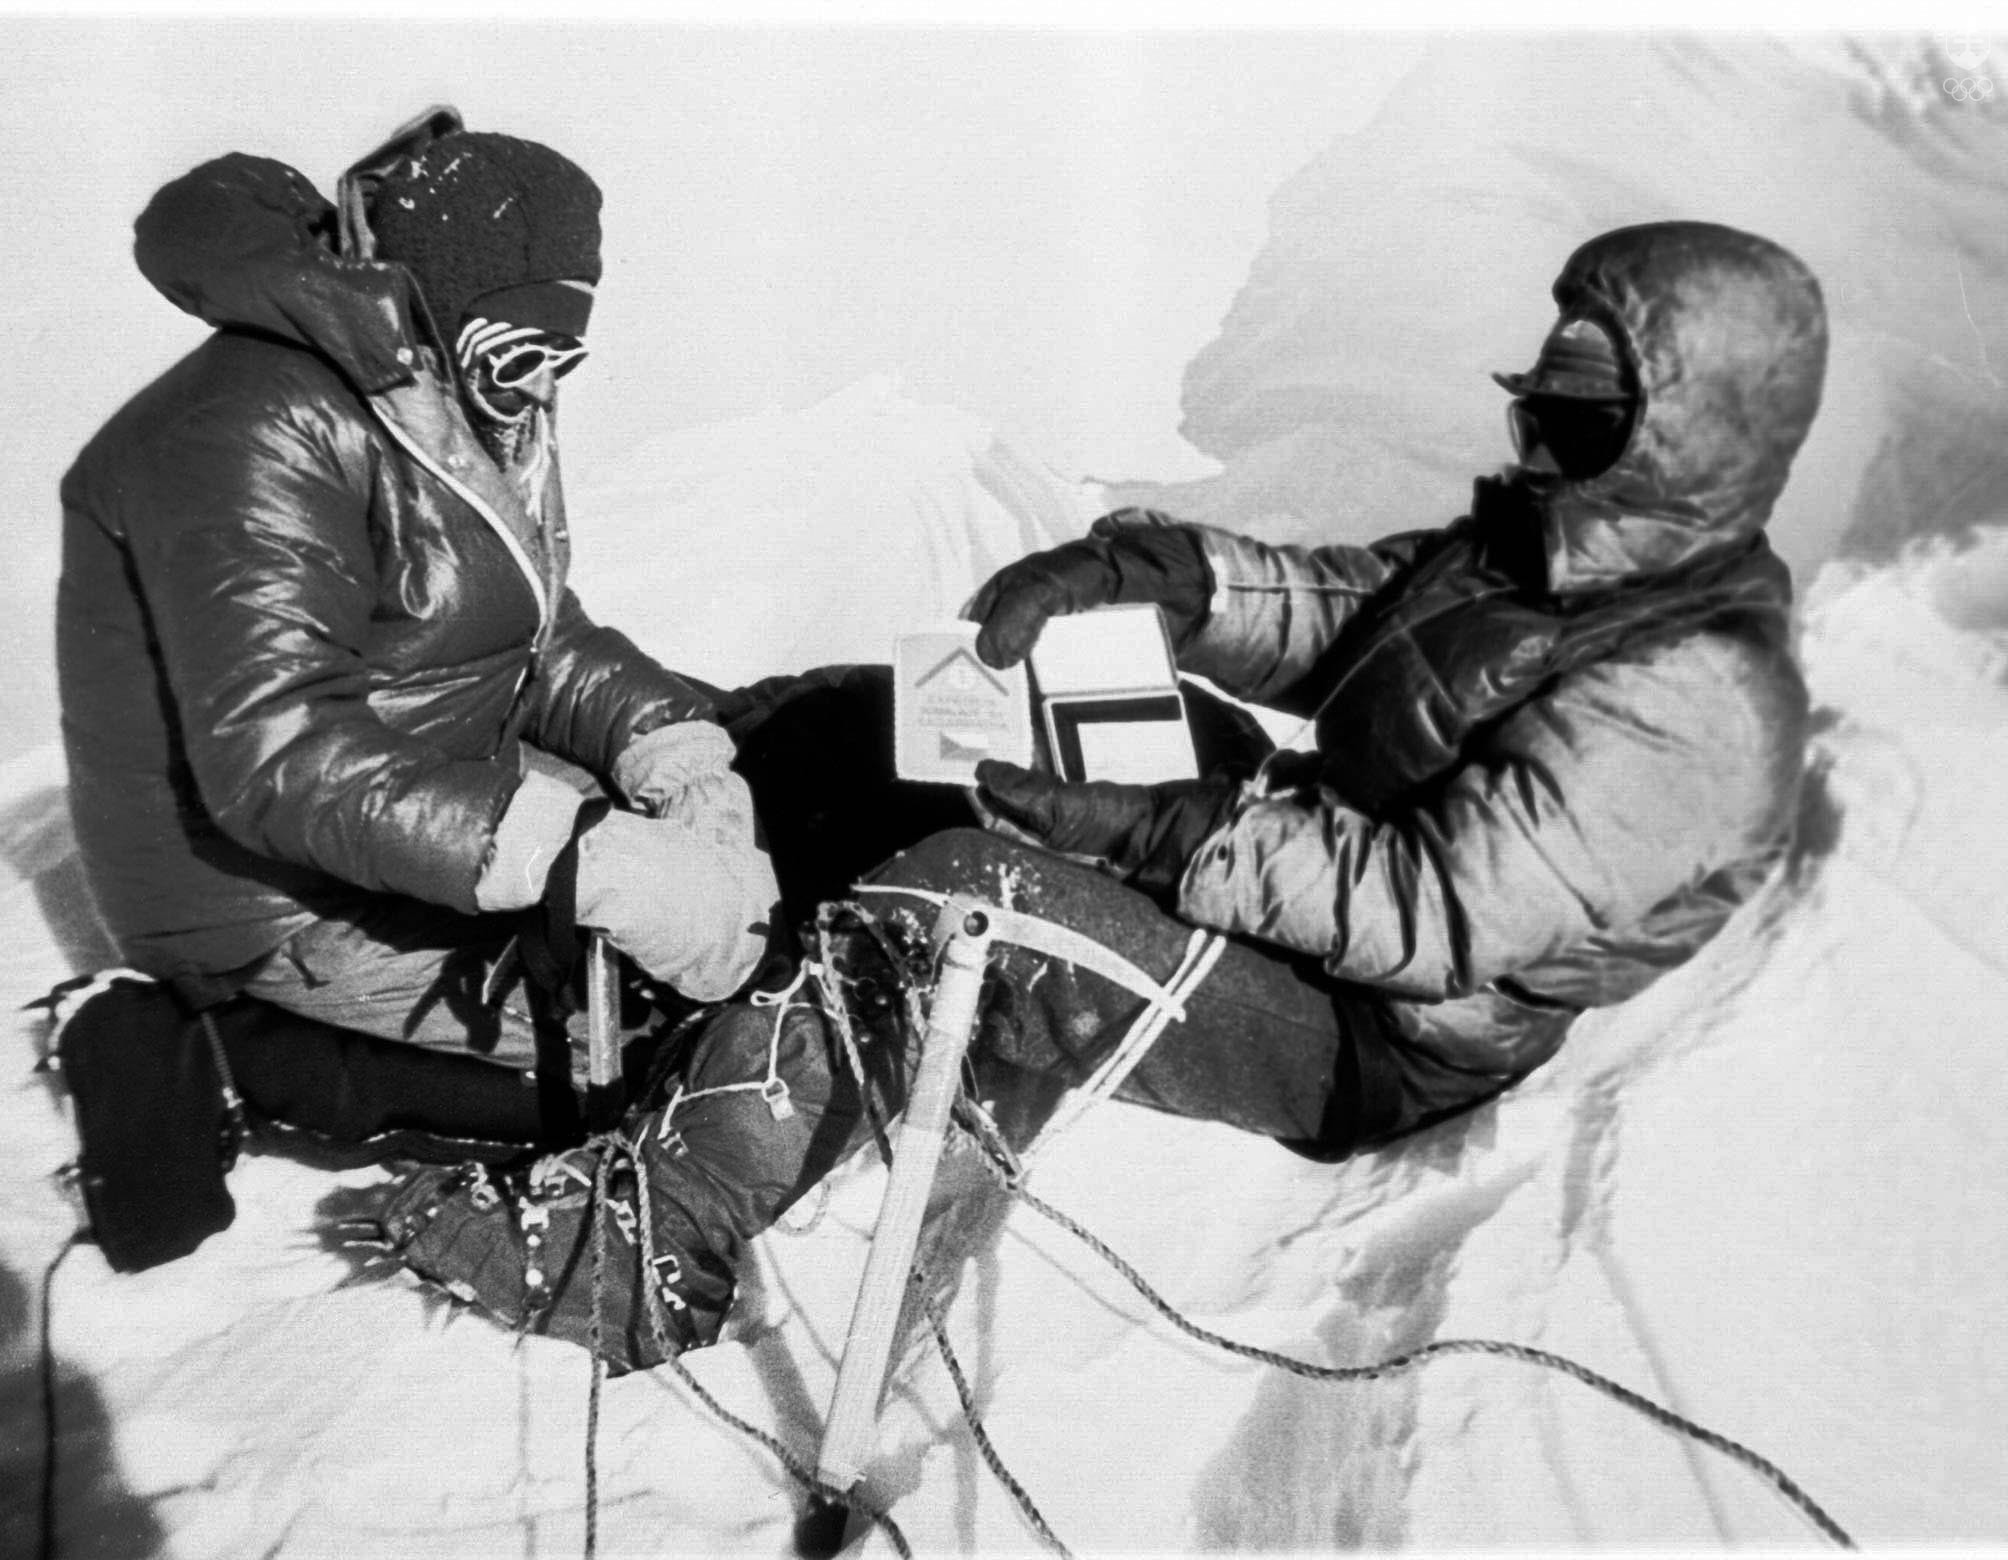 Slovenskí horolezci Zoltán Demján (vpravo) a  Jozef Psotka vystúpili 15. októbra 1984 na najvyššiu horu sveta Mount Everest. Snímka ich zachytáva na vrchole Mount Everestu.  